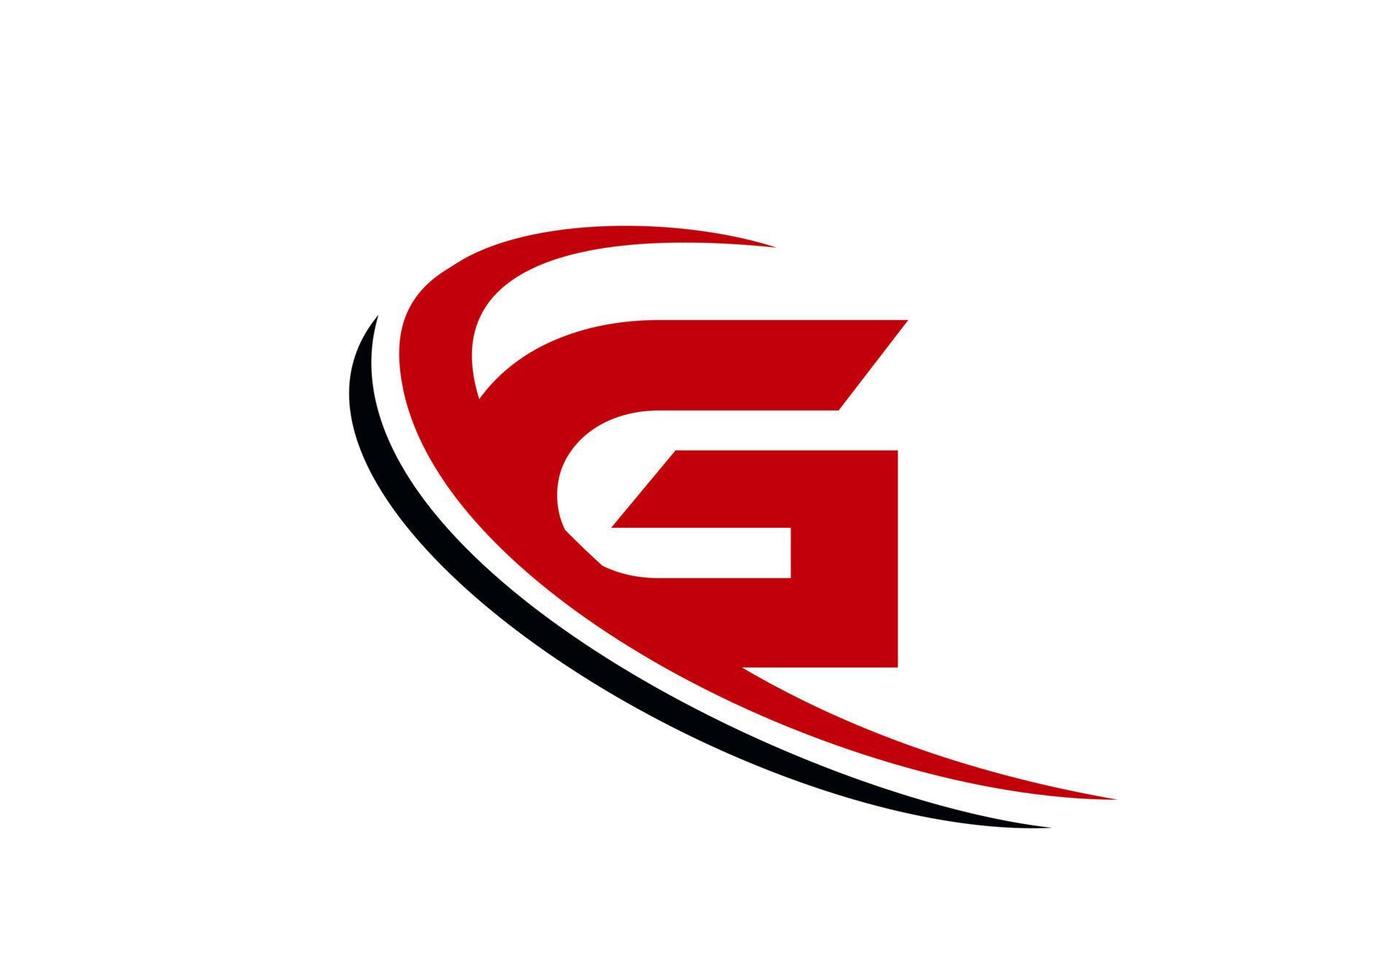 modelo de logotipo de negócios de letra g. design de logotipo g inicial para imóveis, finanças, marketing, gerenciamento, construção, etc. vetor